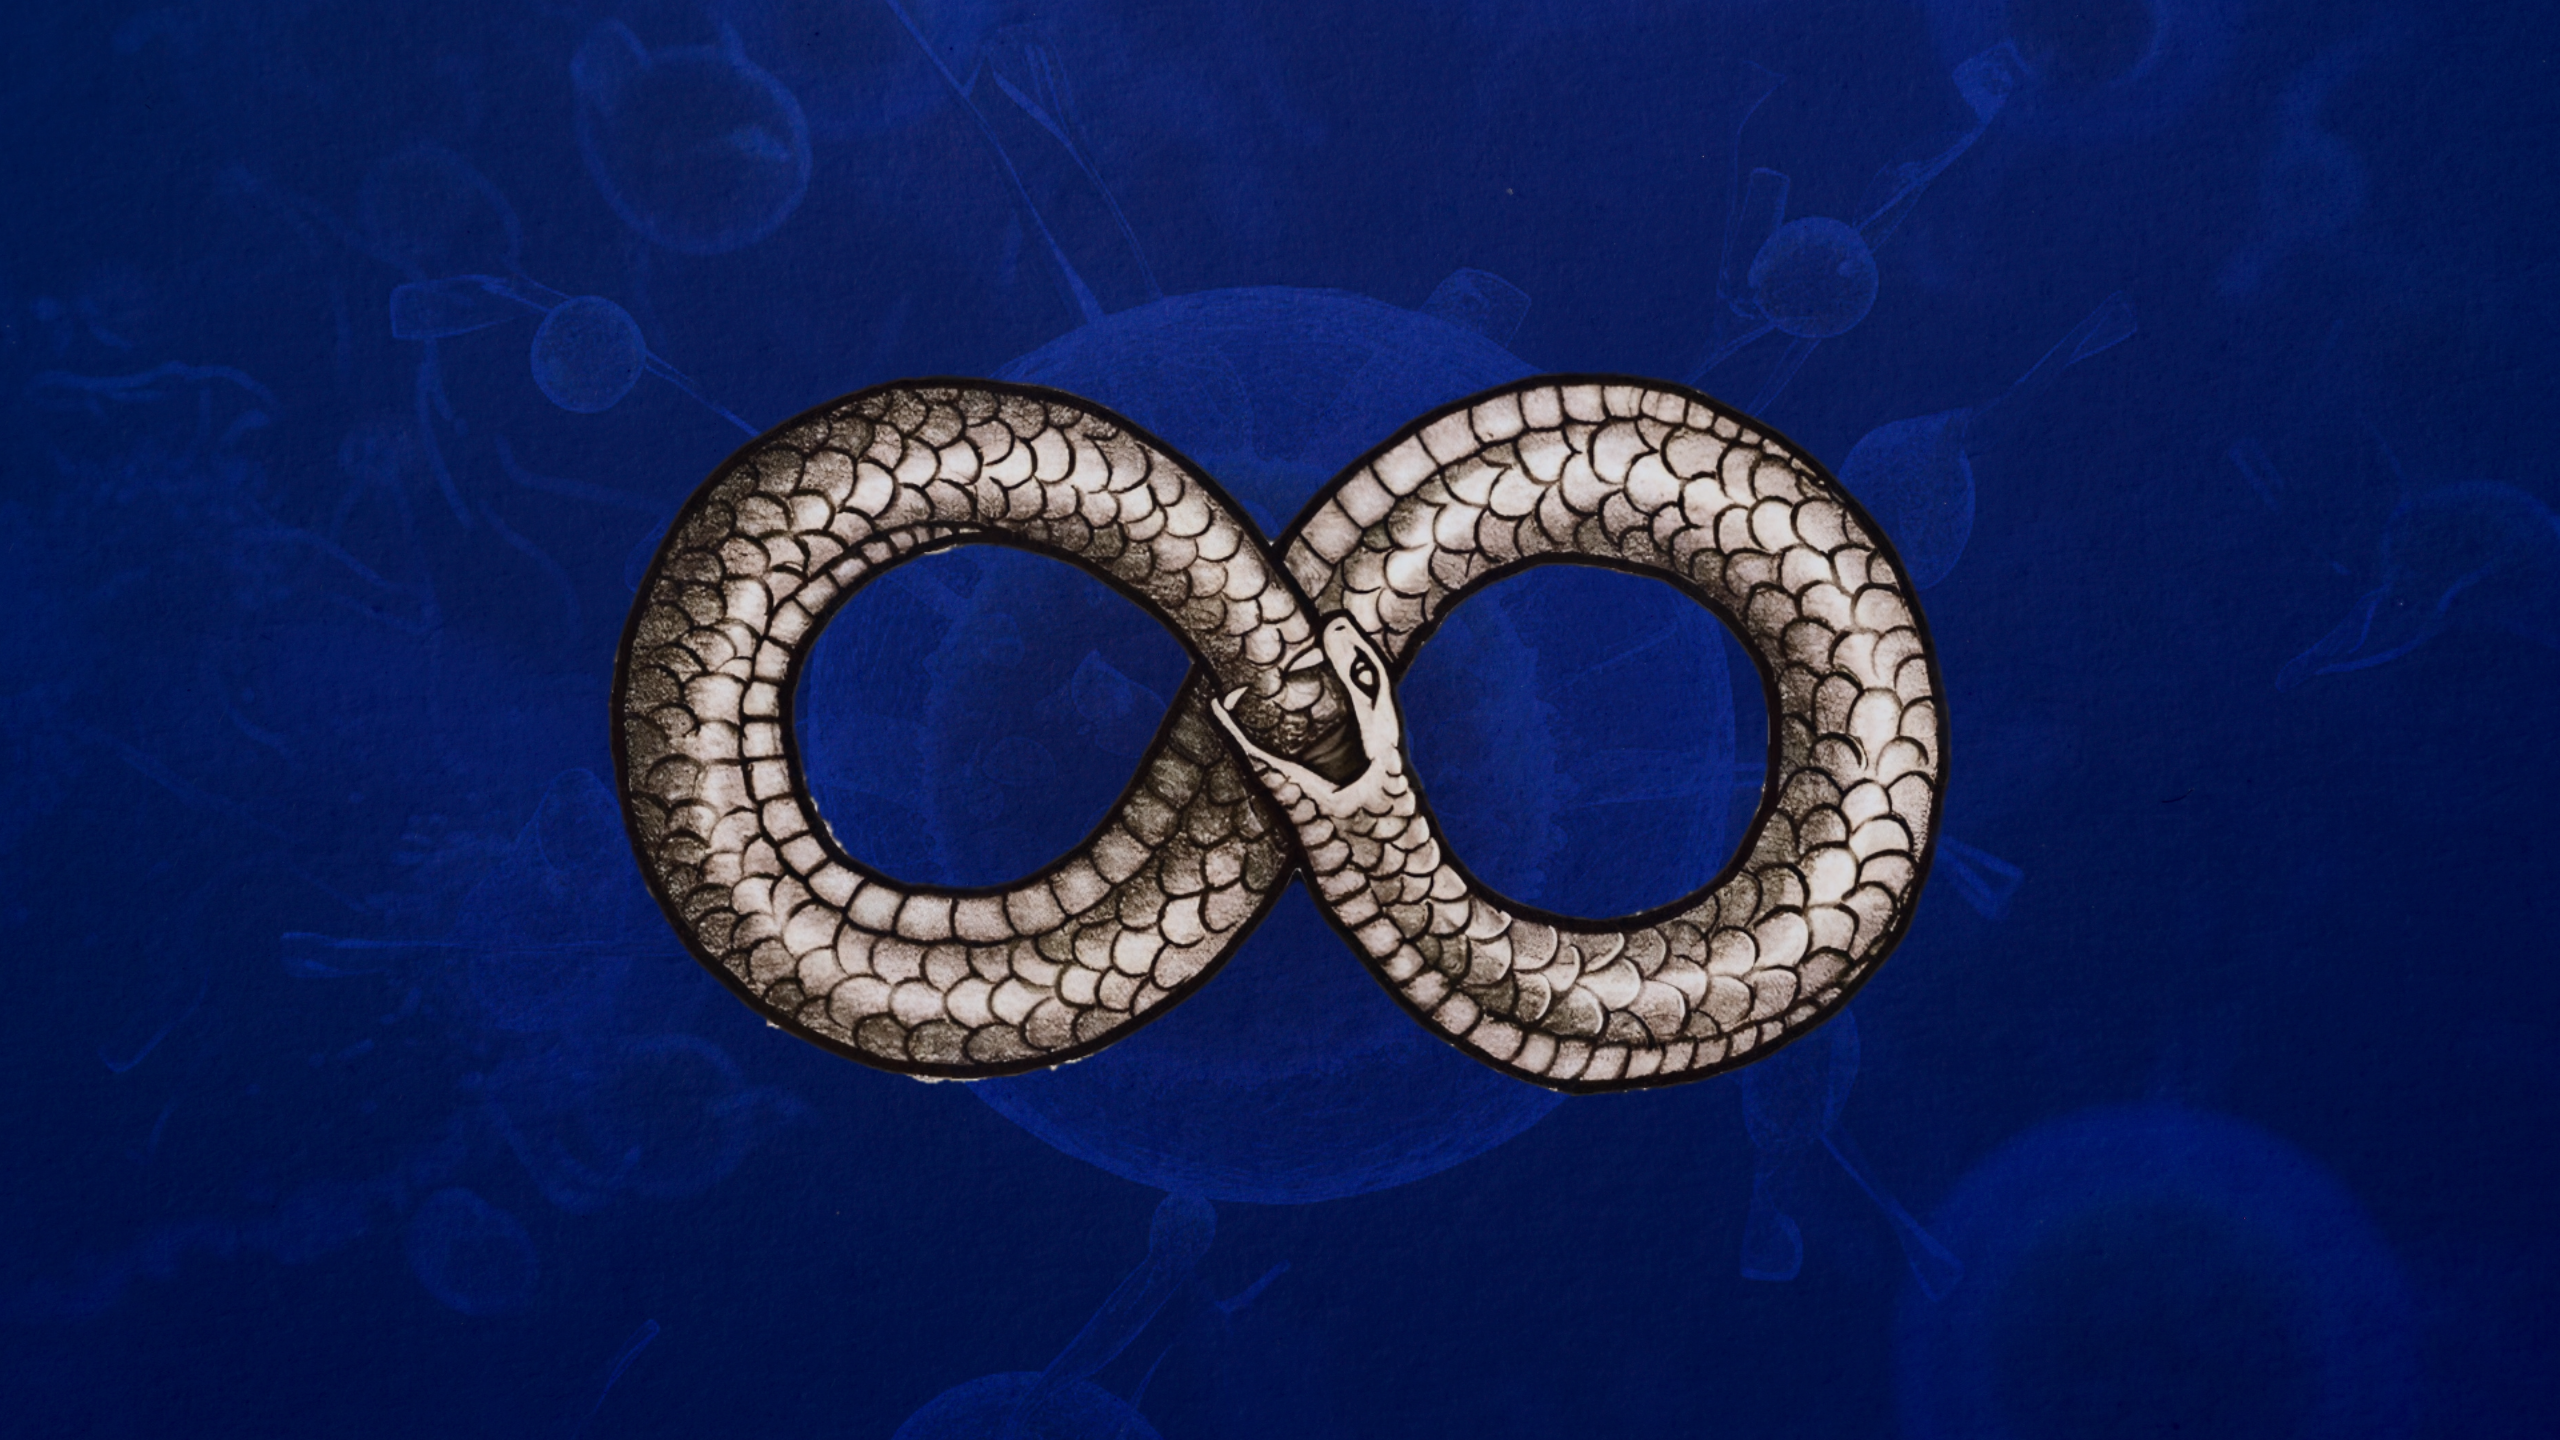 Representación artística de la autofagia: una serpiente comiéndose a sí misma y formando la figura de un número ocho horizontal o símbolo de eternidad. Fondo sutil de células humanas.